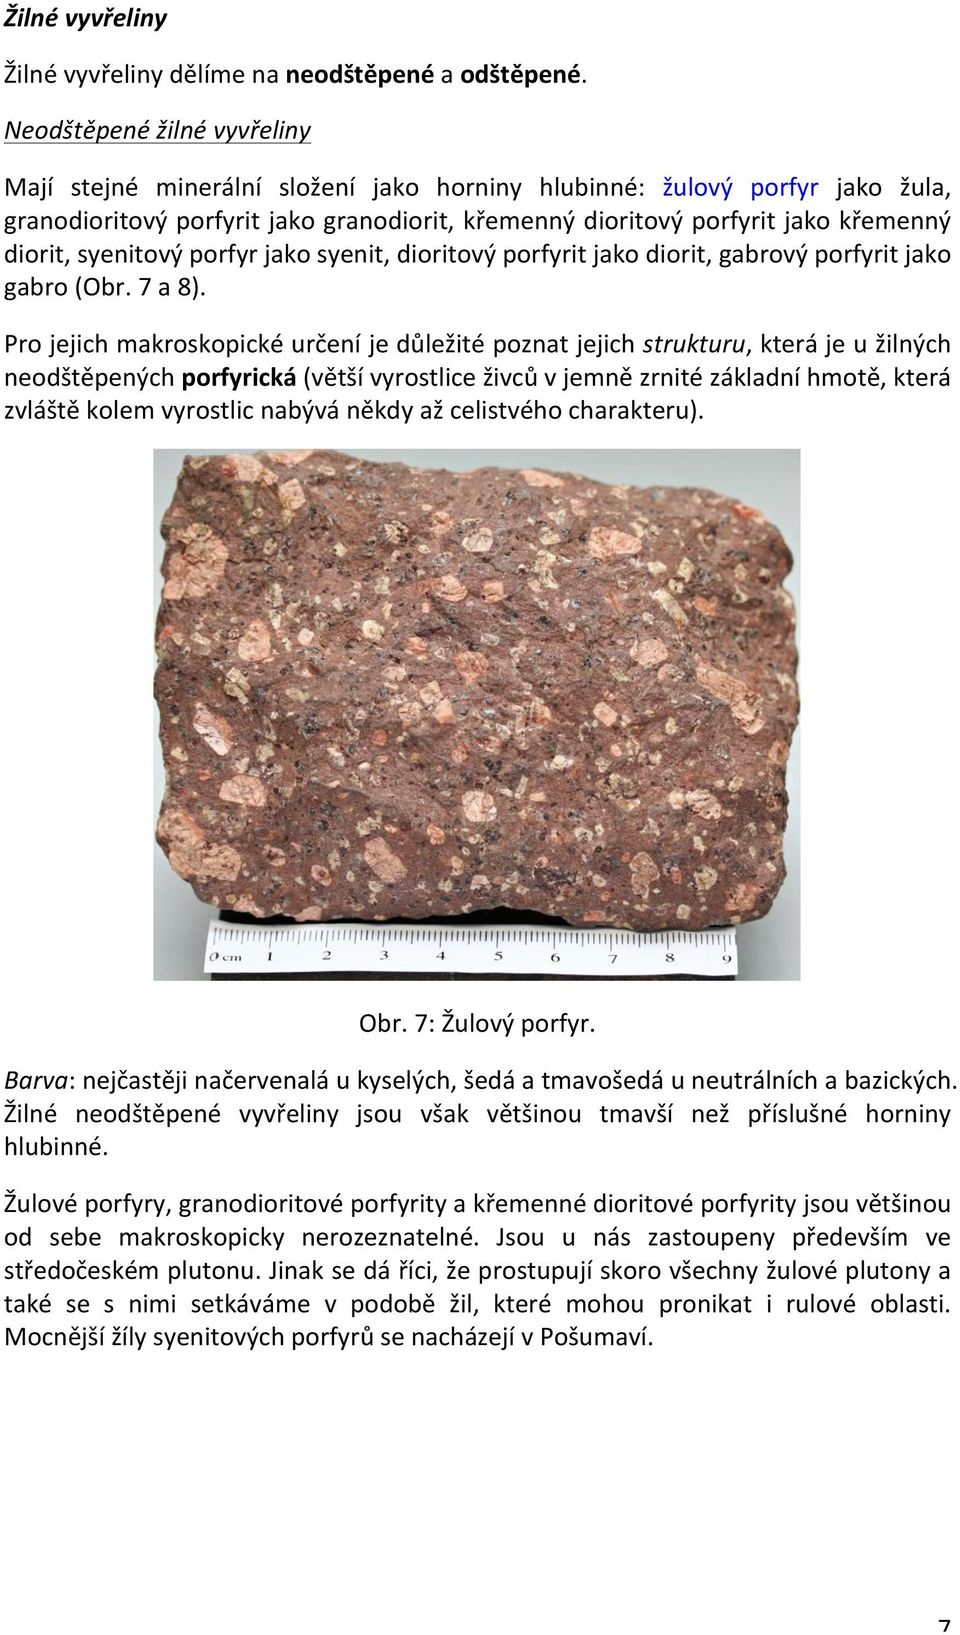 syenitový porfyr jako syenit, dioritový porfyrit jako diorit, gabrový porfyrit jako gabro (Obr. 7 a 8).